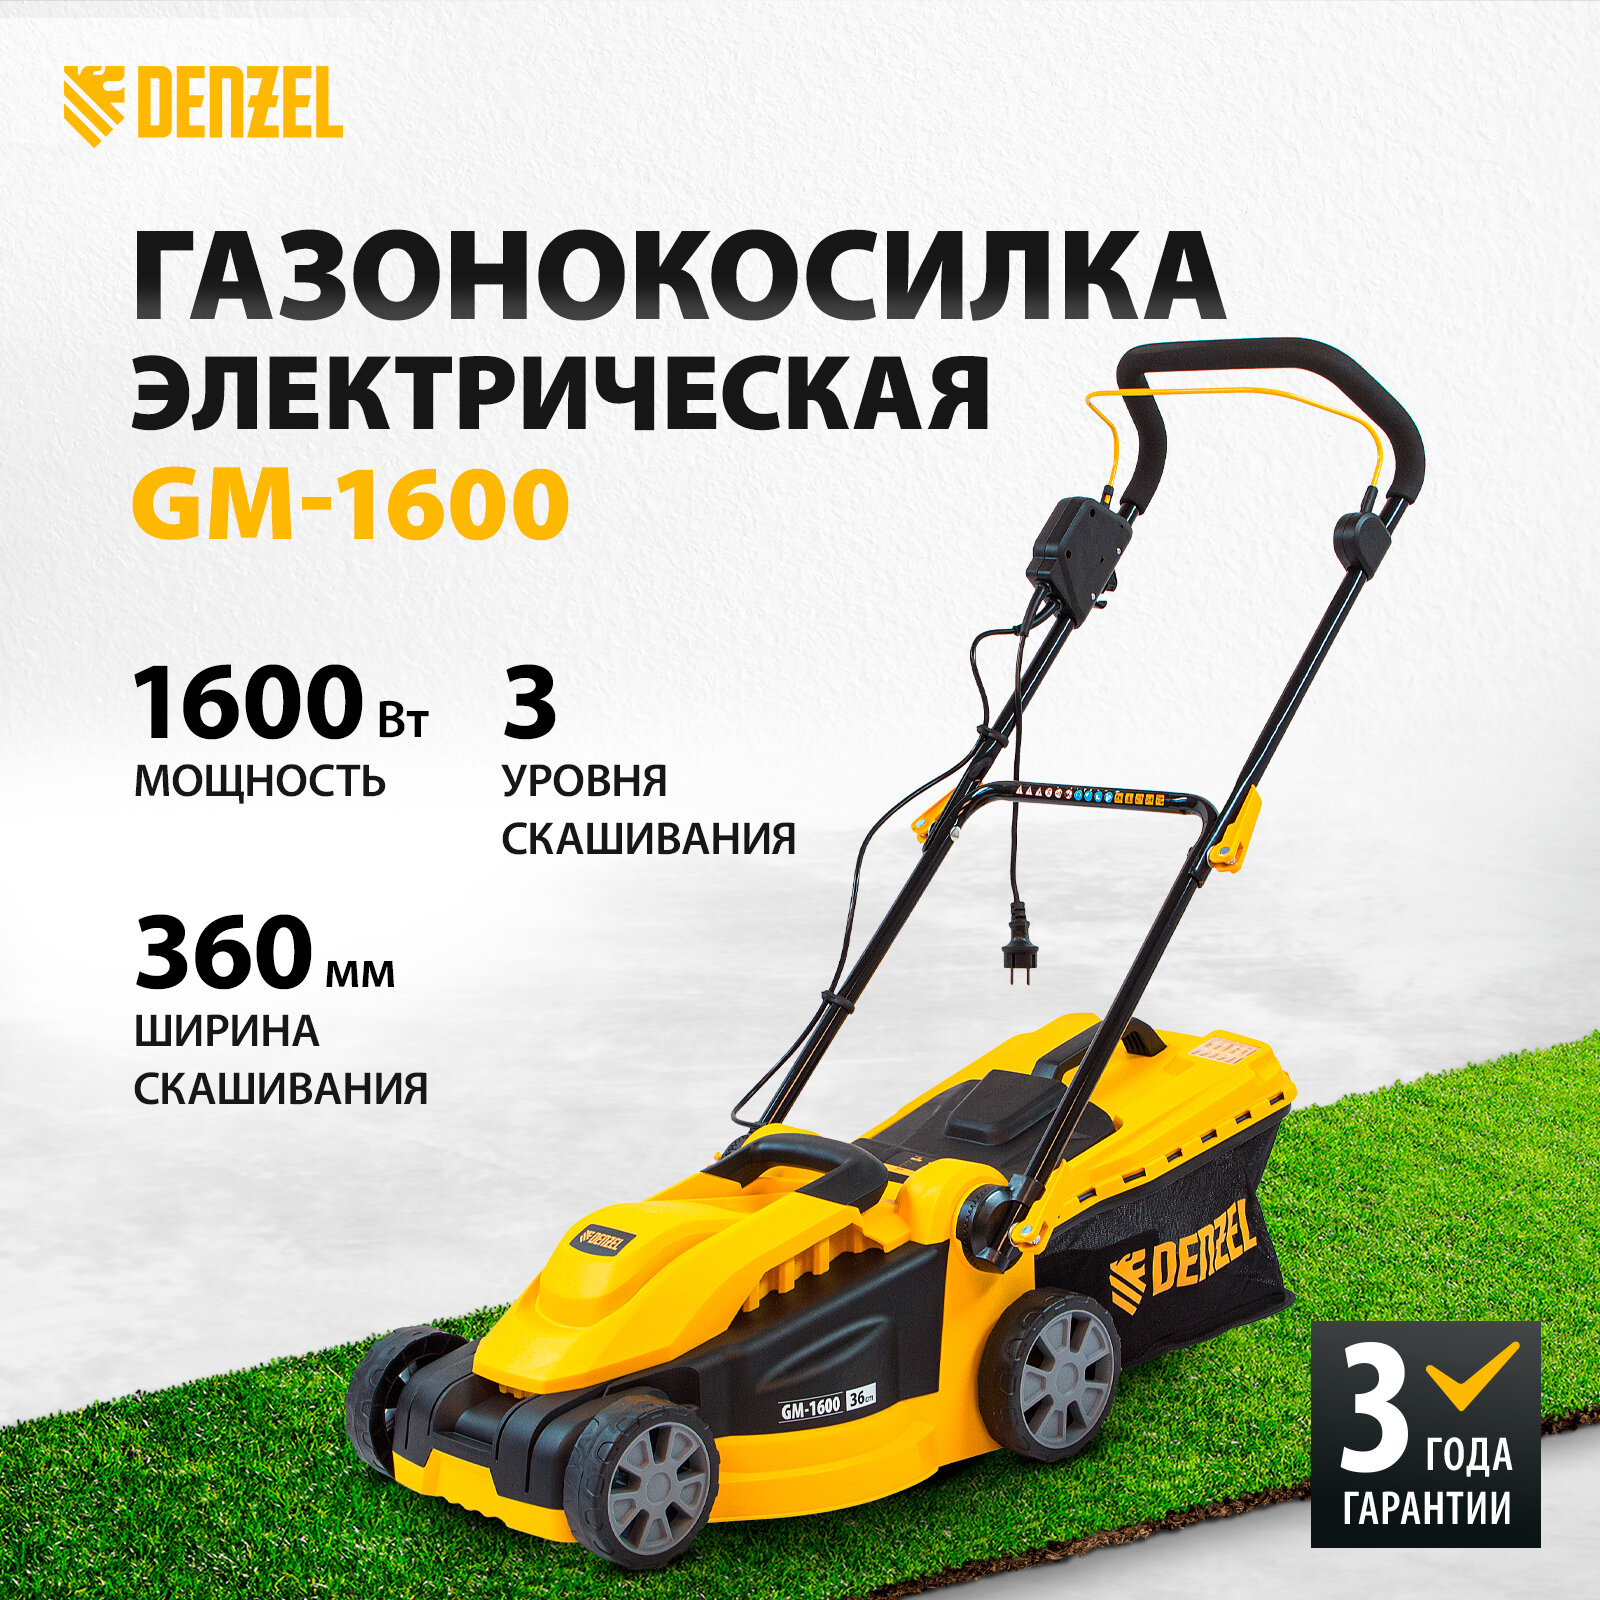 Электрическая газонокосилка Denzel 96616 GM-1600 1600 Вт 36 см